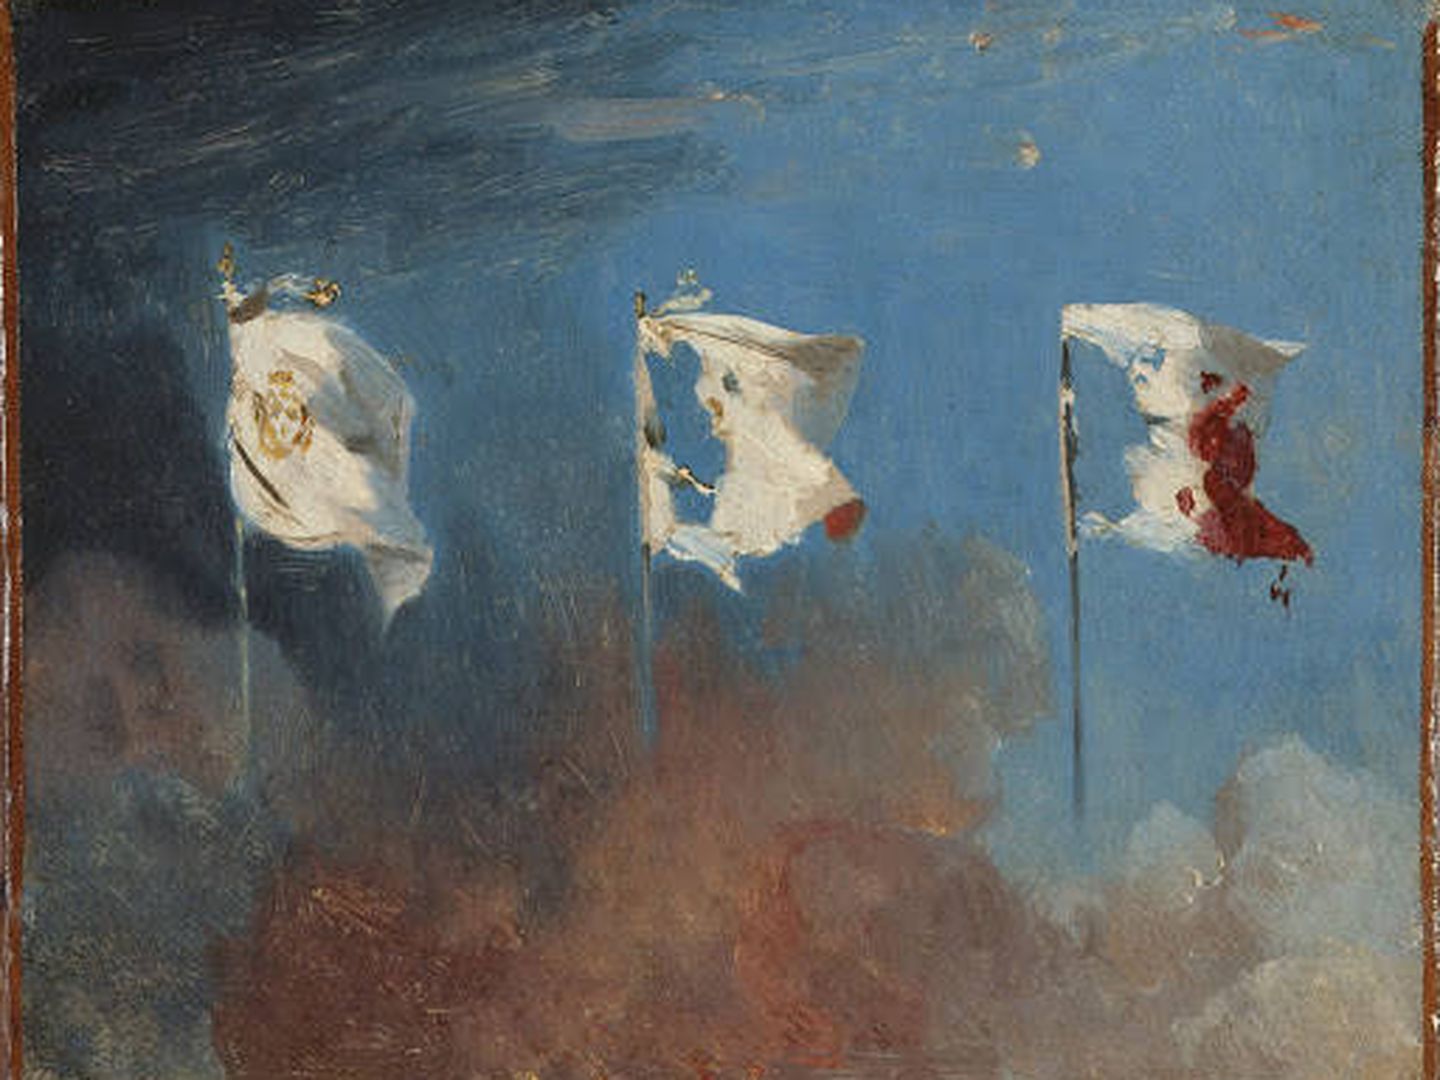 Alegoría de las Tres Gloriosas: la bandera de la Francia de la Restauración (blanca, con el escudo), se ve paulatinamente cambiada hasta transformarse en la bandera tricolor, manchada con el rojo de la sangre y recortada contra el azul del cielo. Óleo de León Cogniet